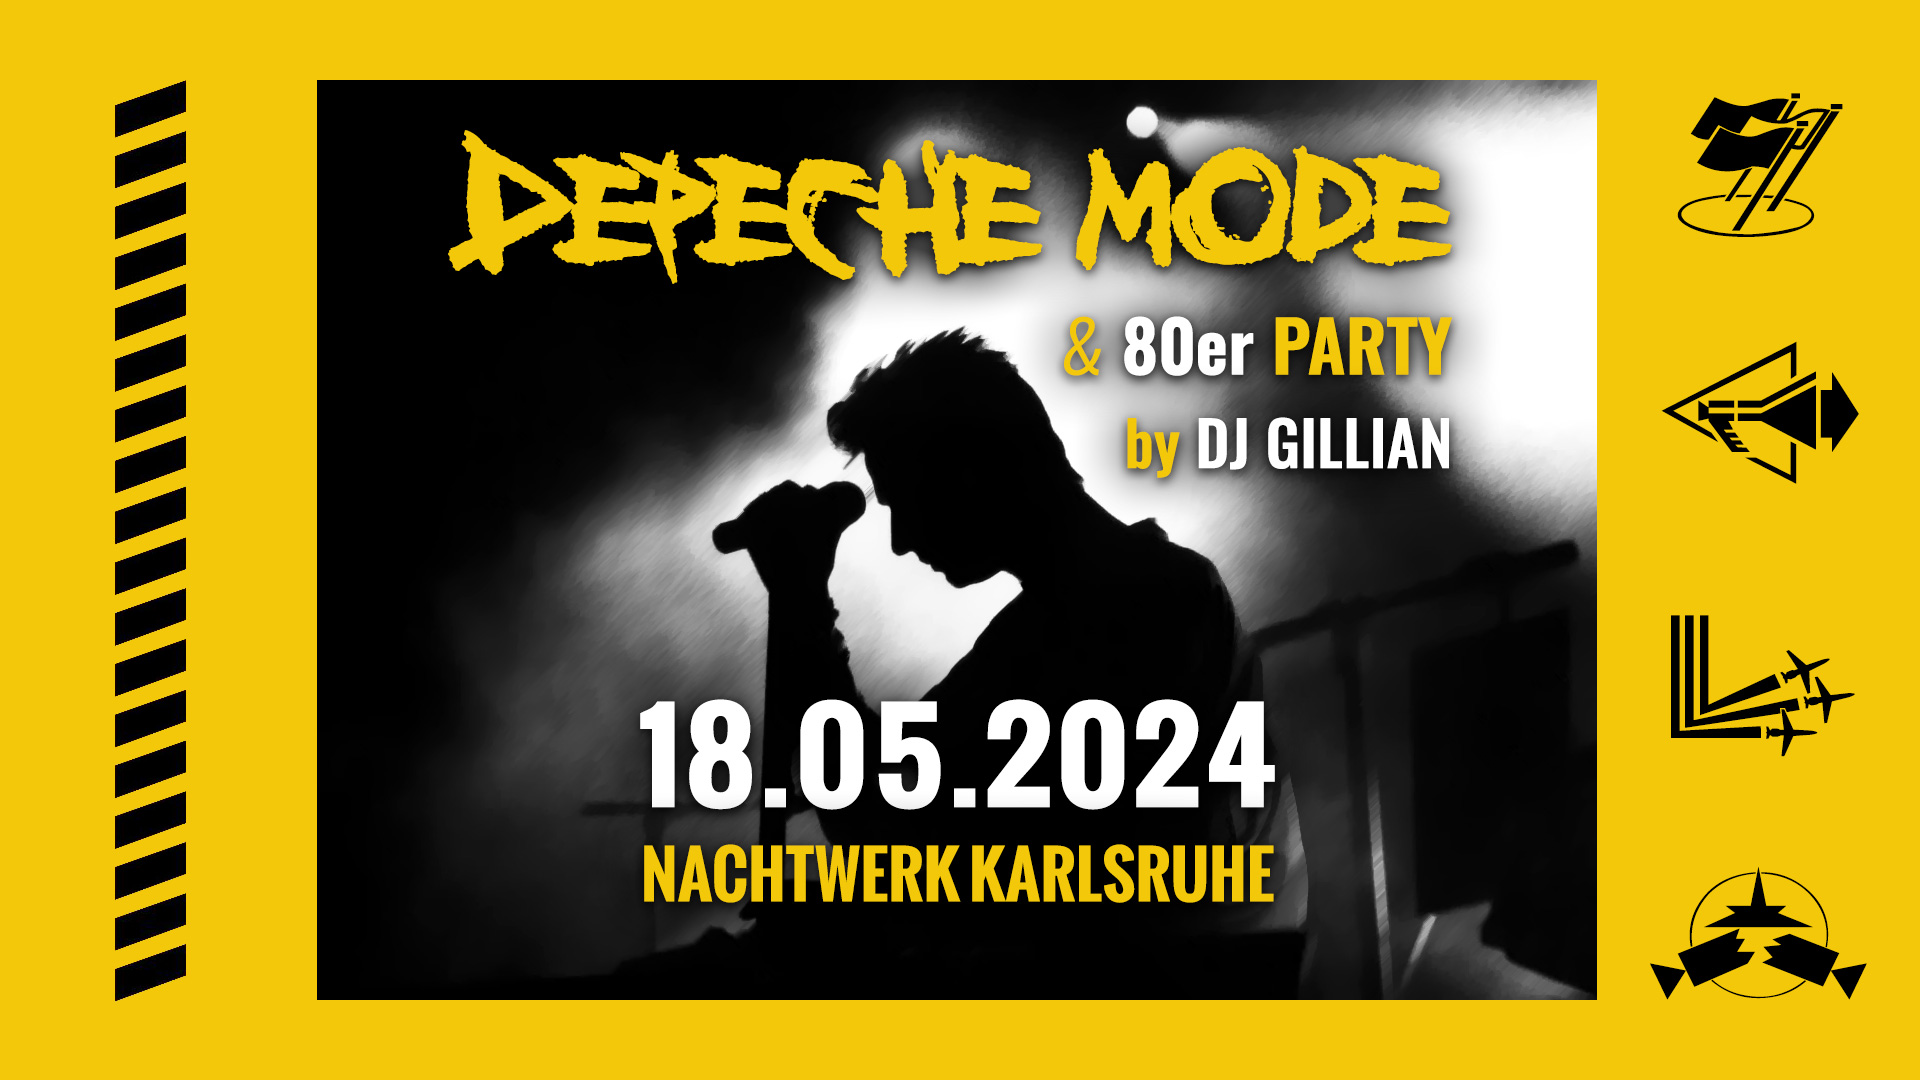 Die legendäre Depeche Mode & 80er Party im Nachtwerk Karlsruhe mit DJ GILLIAN. Die großartigen Songs von Depeche Mode, die kultigsten Hits aus den 80ern und die beliebtesten Pop & Wave Klassiker.